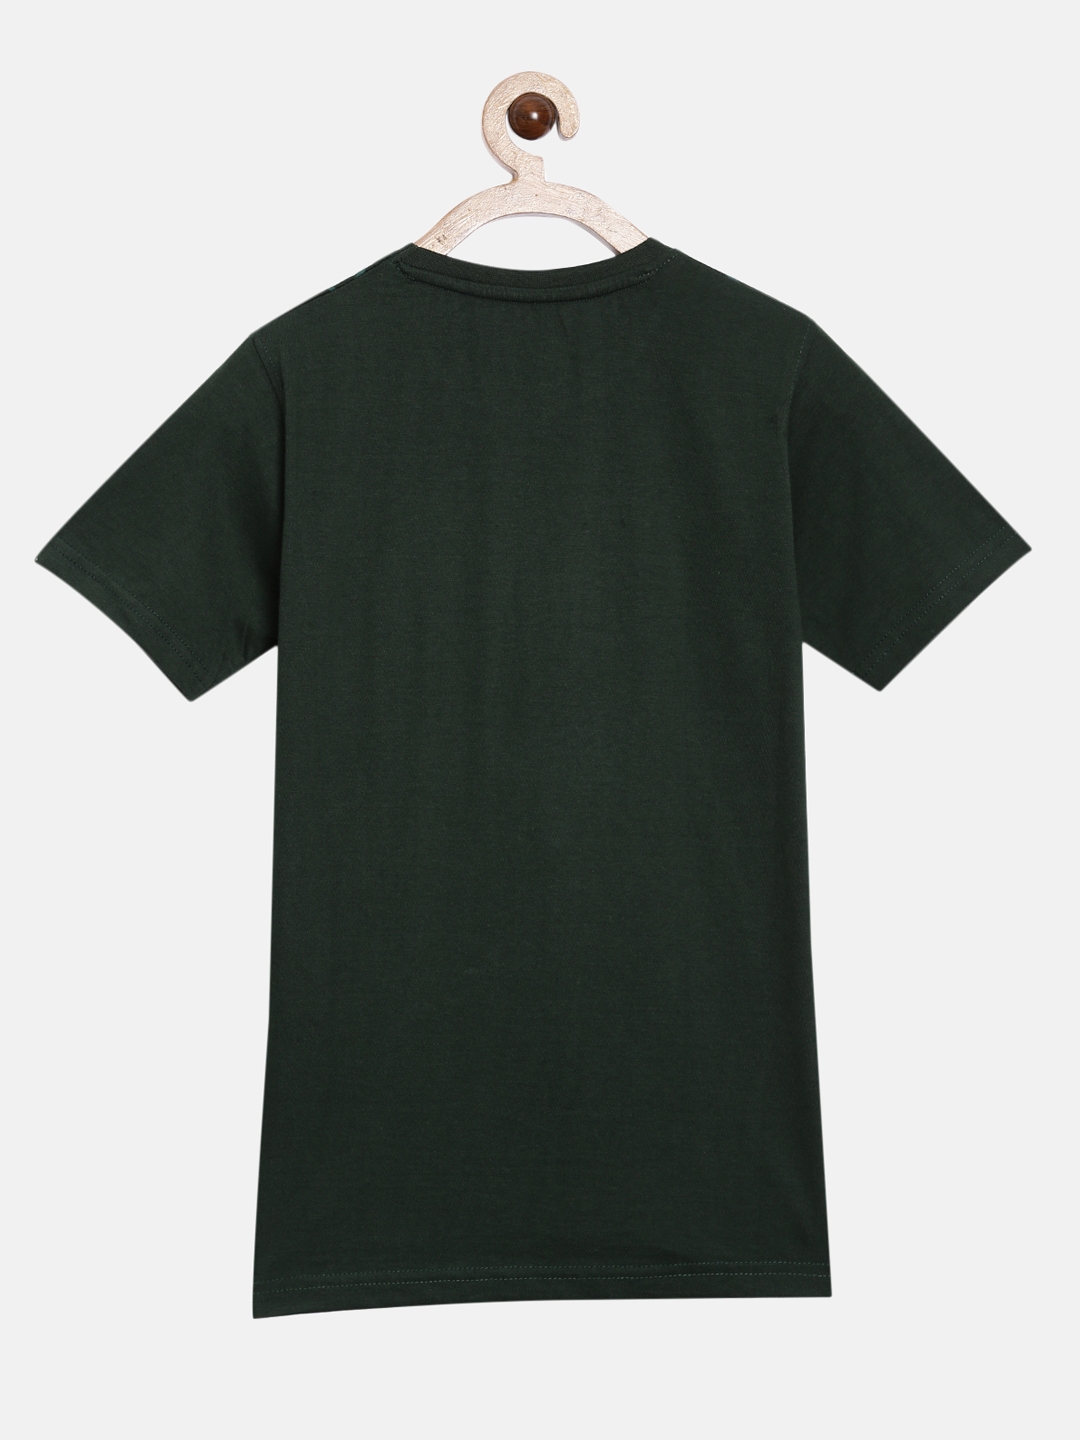 Peejas | Peejas Kids Boys 100% Cotton Printed Casual Tshirt 4